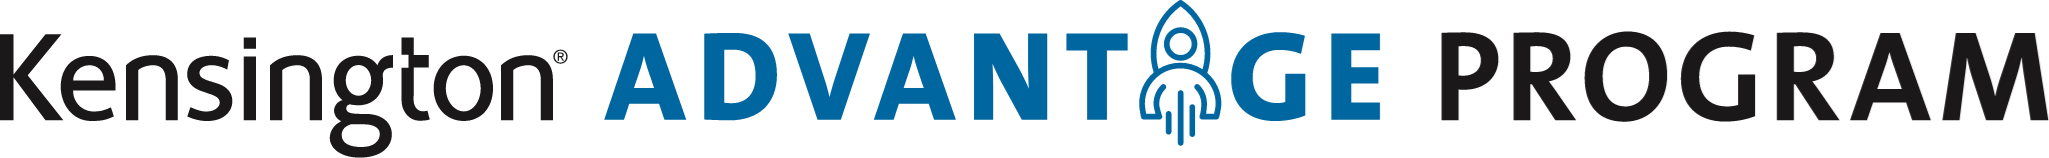 Kensington Advantage Program Logo